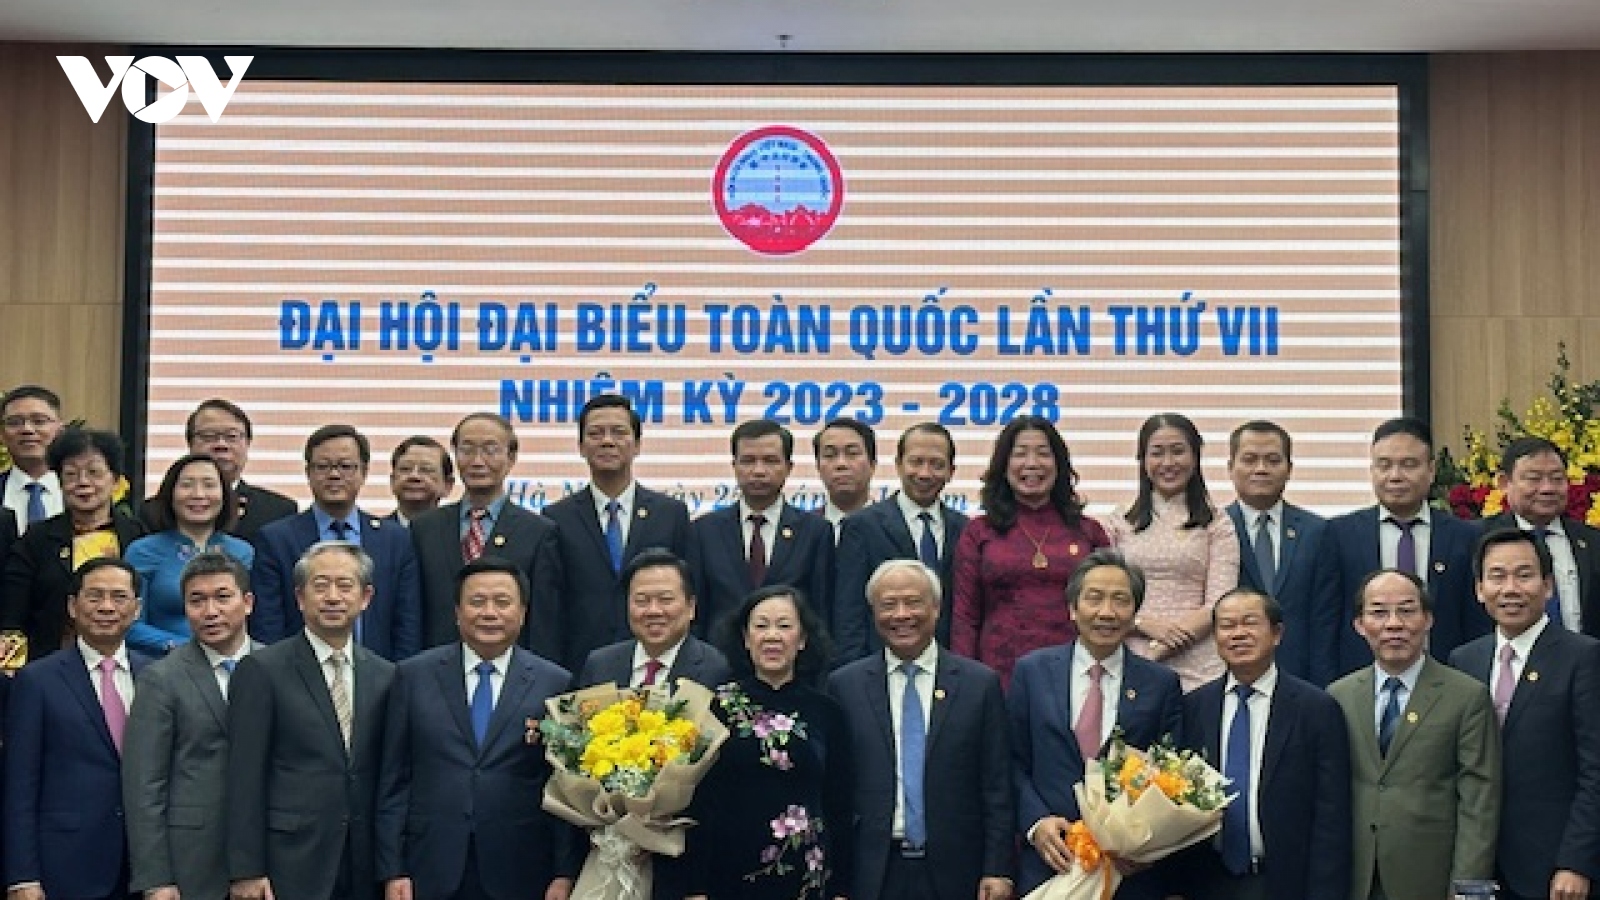 Đại hội Đại biểu toàn quốc Hội hữu nghị Việt Nam - Trung Quốc nhiệm kỳ 7